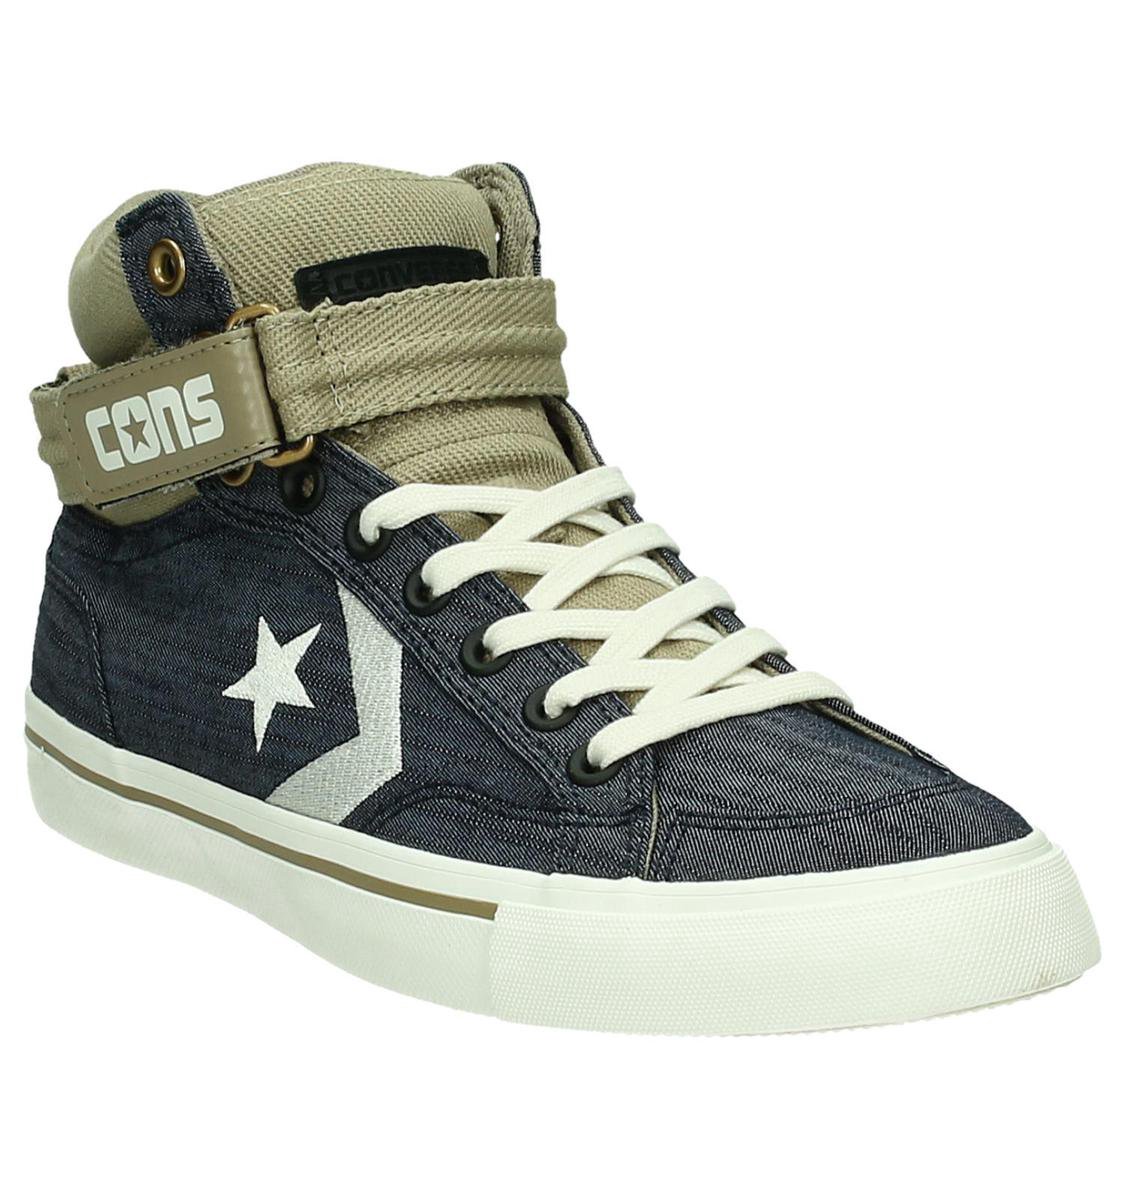 Converse Pro blaze plus - Sneakers - Heren - Maat 39.5 - Blauw | bol.com